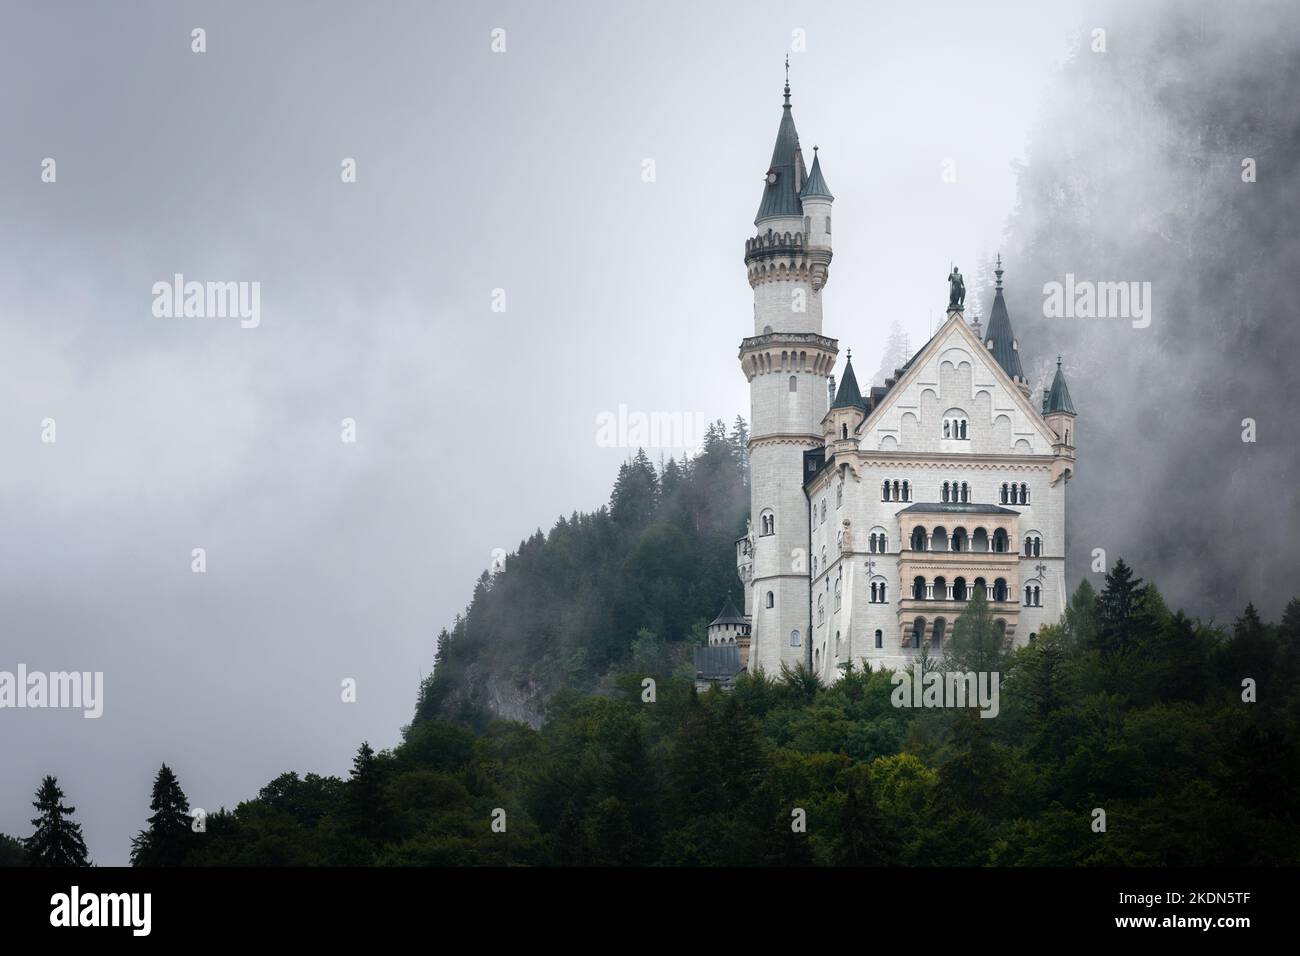 Castello di Neuschwanstein a Fussen, splendido palazzo neogotico del XIX secolo e punto di riferimento più famoso della Baviera, Germania. Vista da lontano su una ra Foto Stock